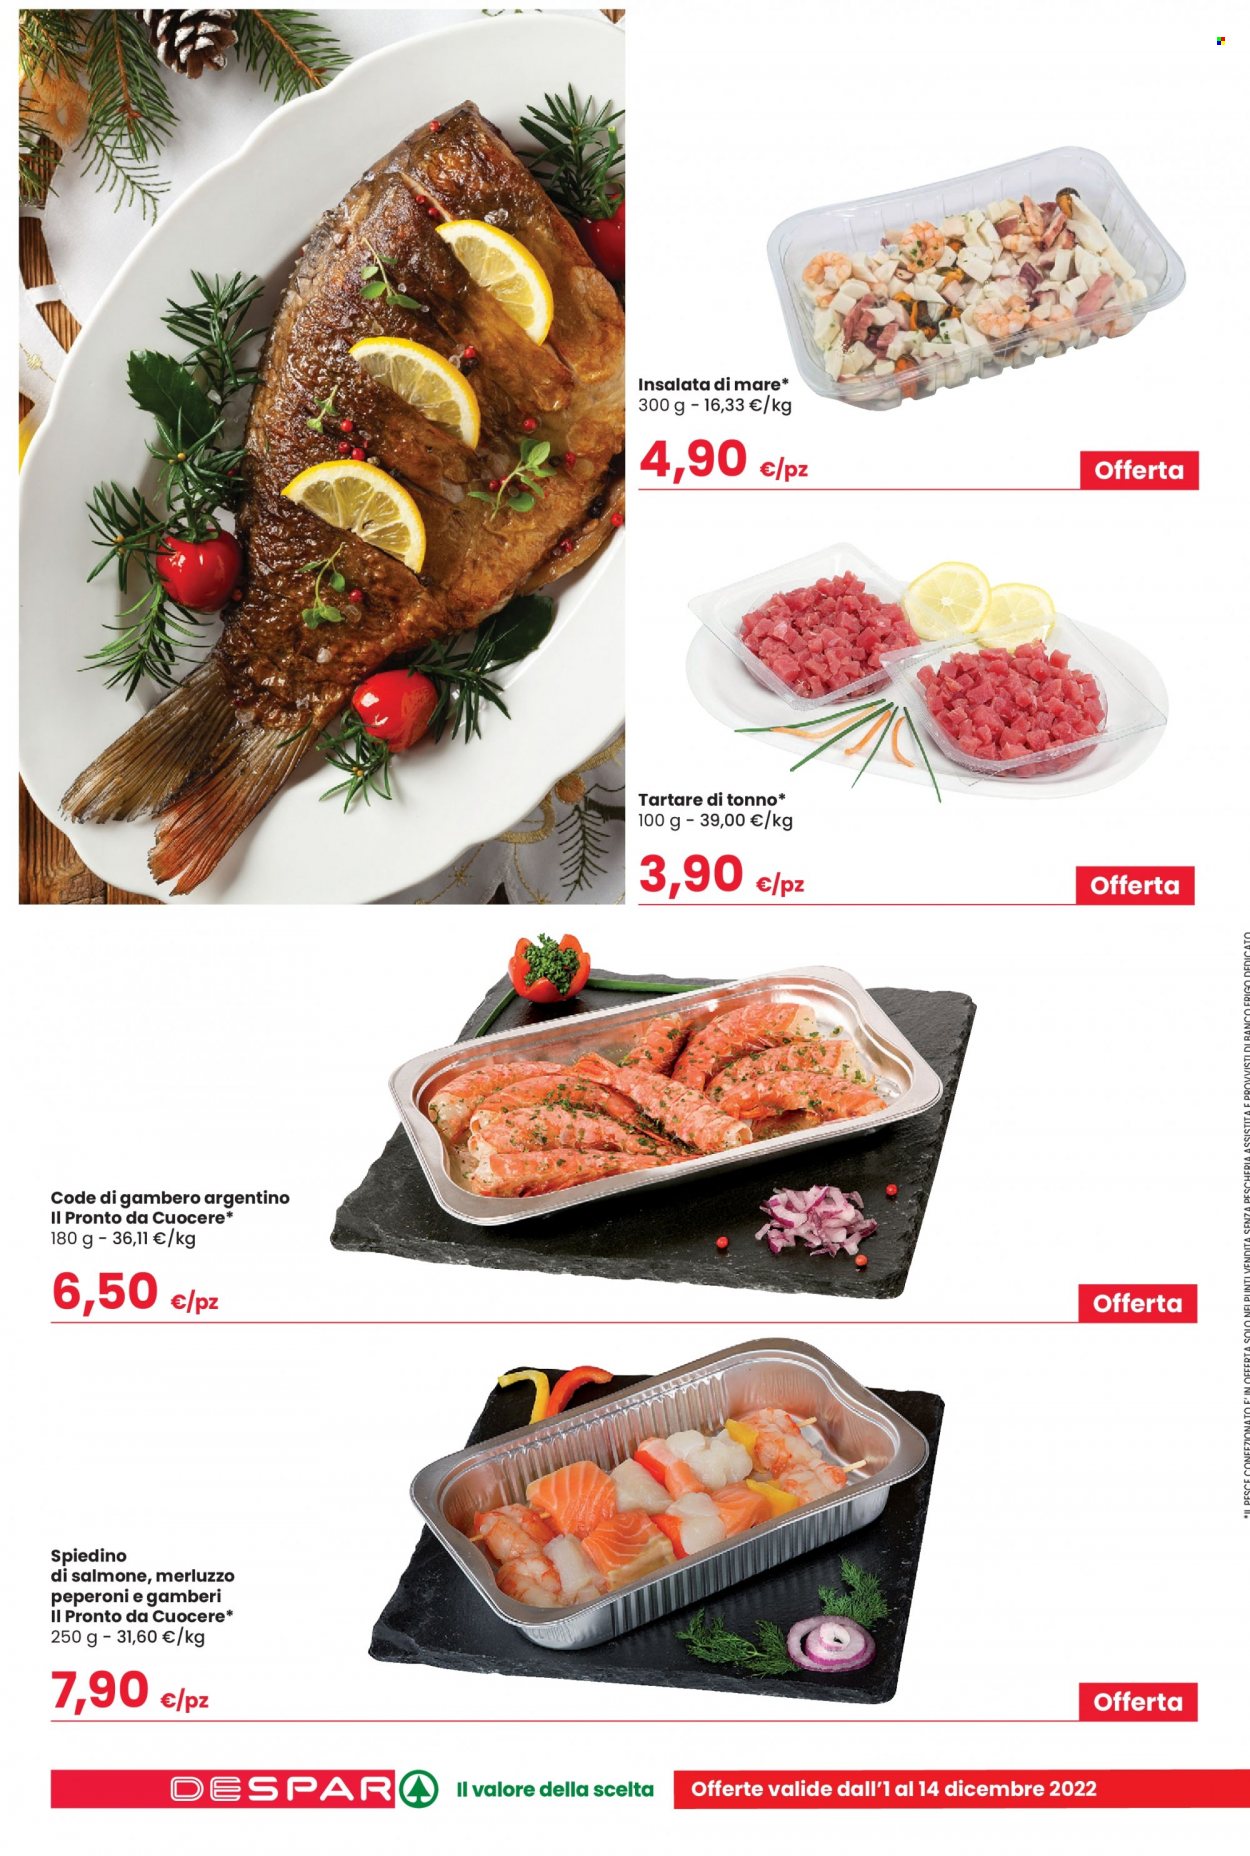 thumbnail - Volantino Despar - 1/12/2022 - 14/12/2022 - Prodotti in offerta - salmone, merluzzo, tonno, insalata di mare, tartare di pesce. Pagina 8.